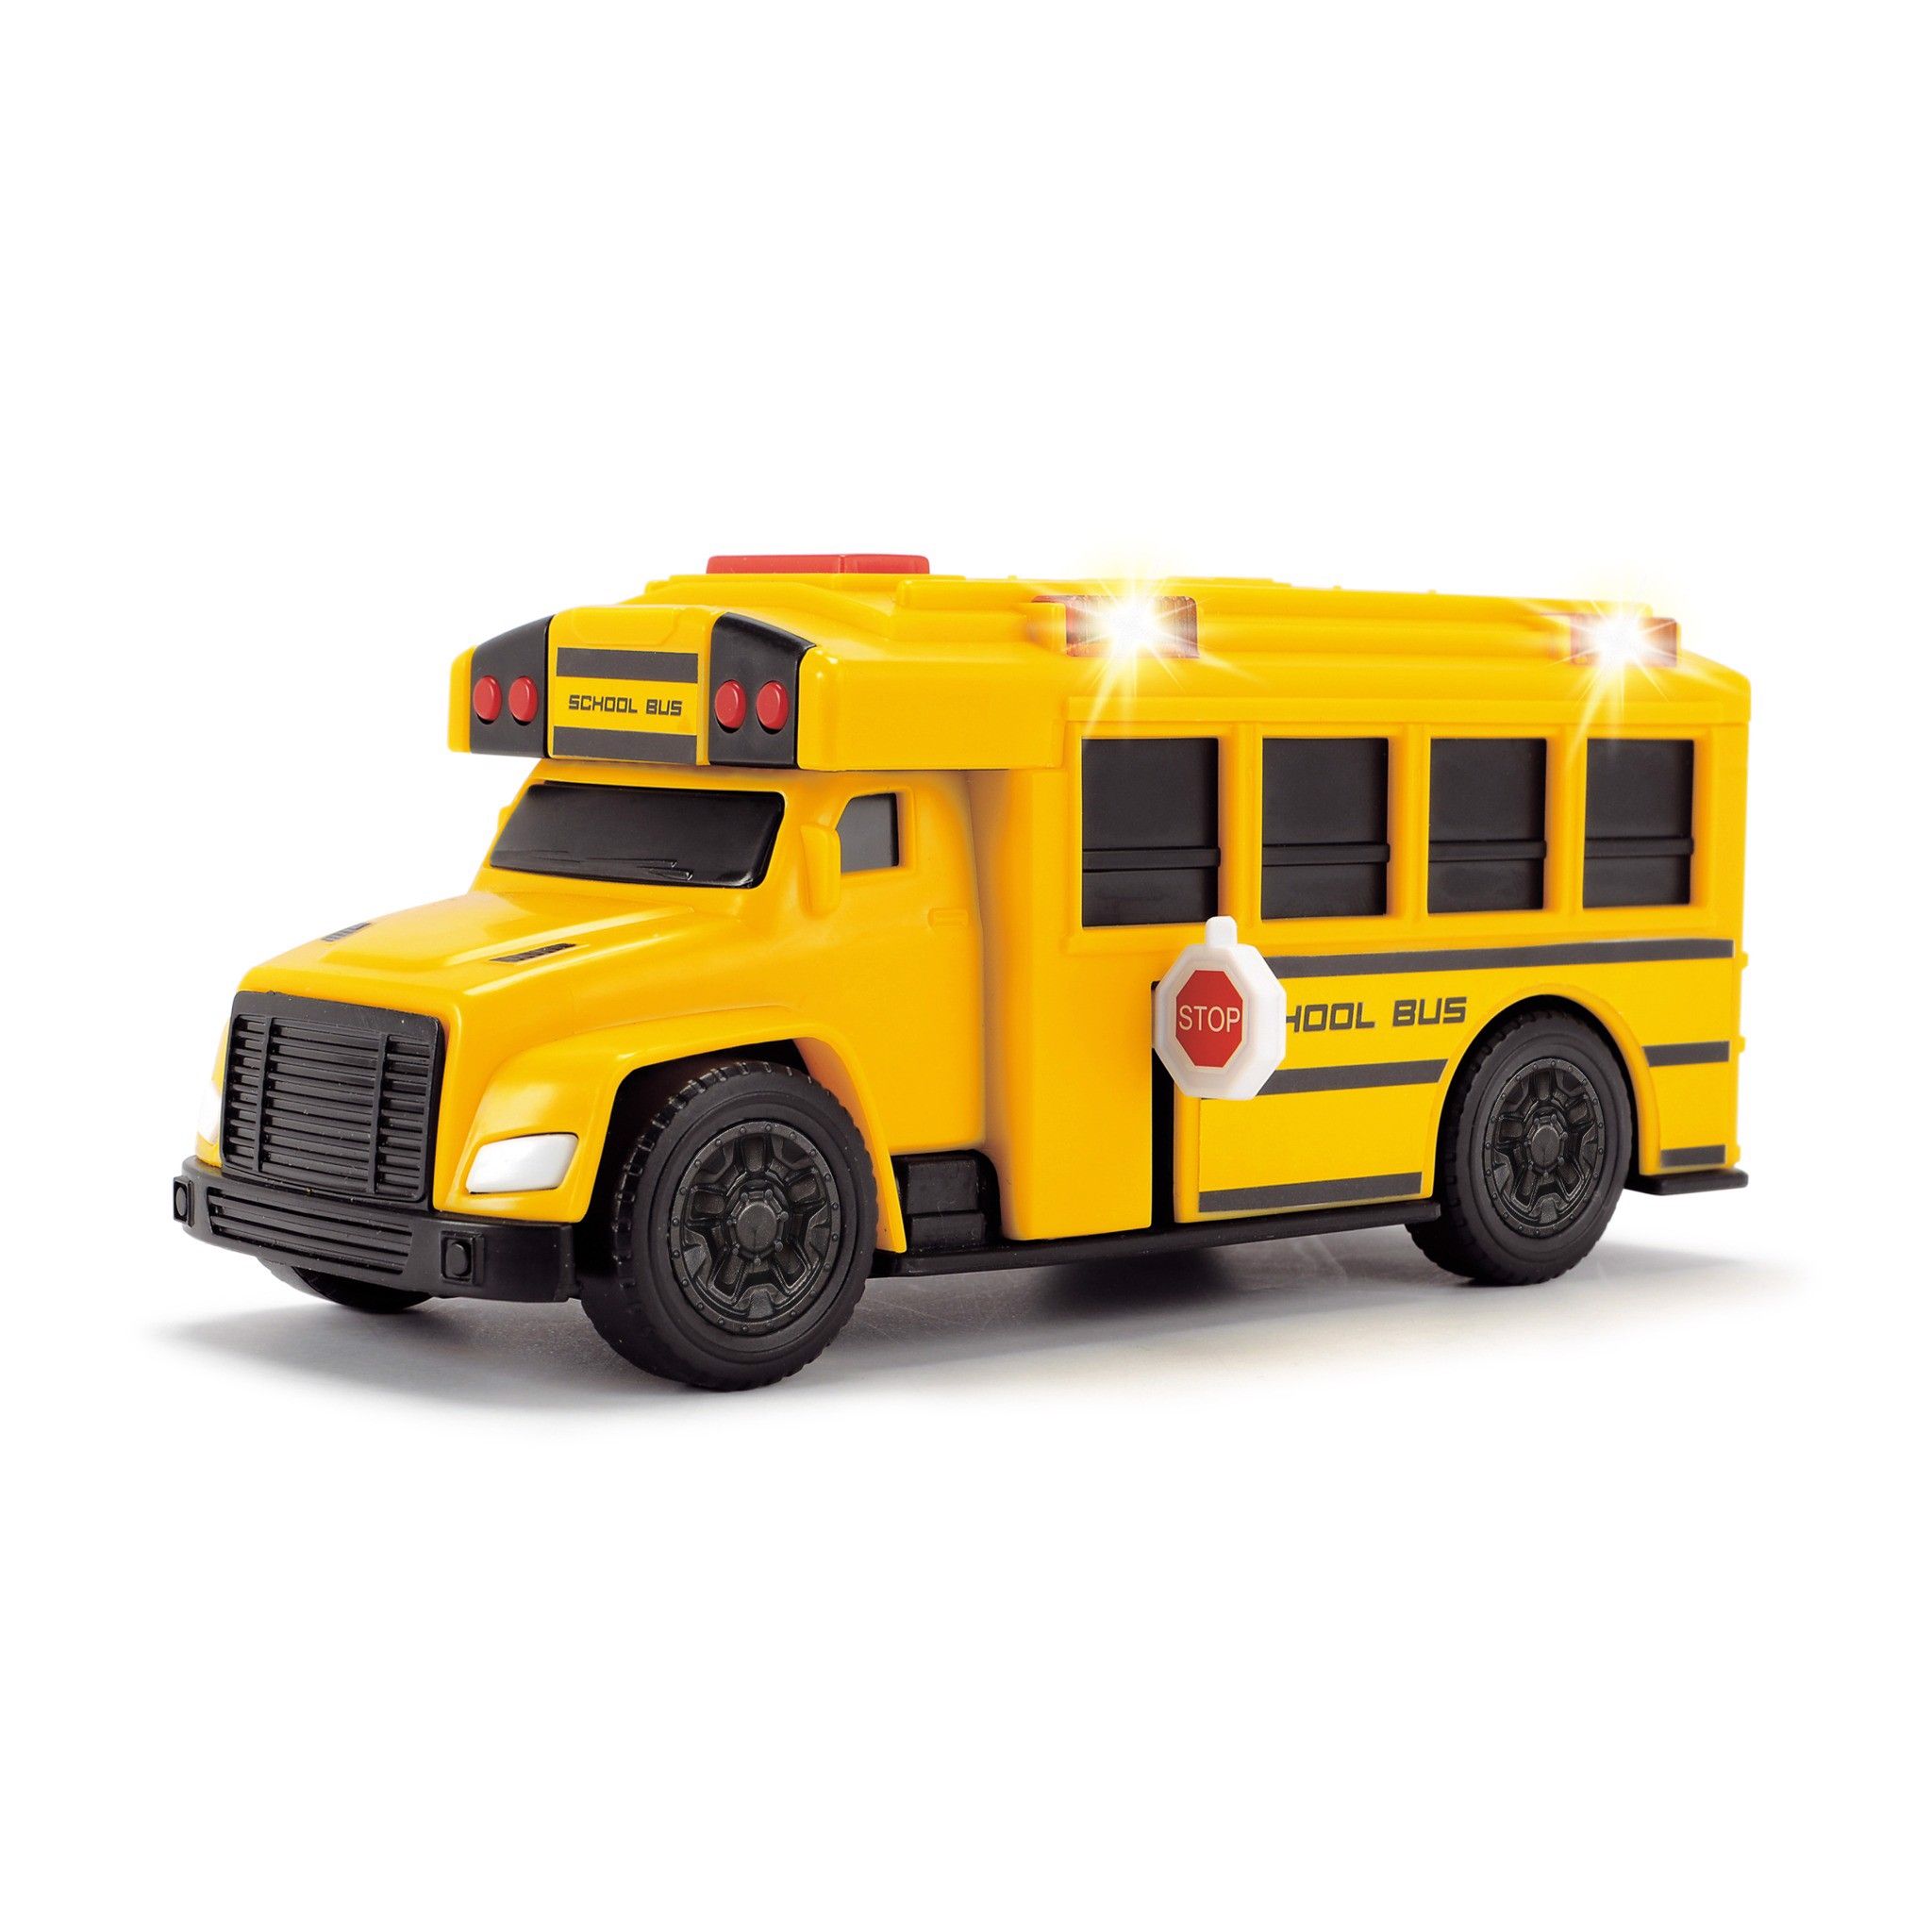  203302017EFS Đồ Chơi Xe Buýt Trường Học DICKIE TOYS School Bus 